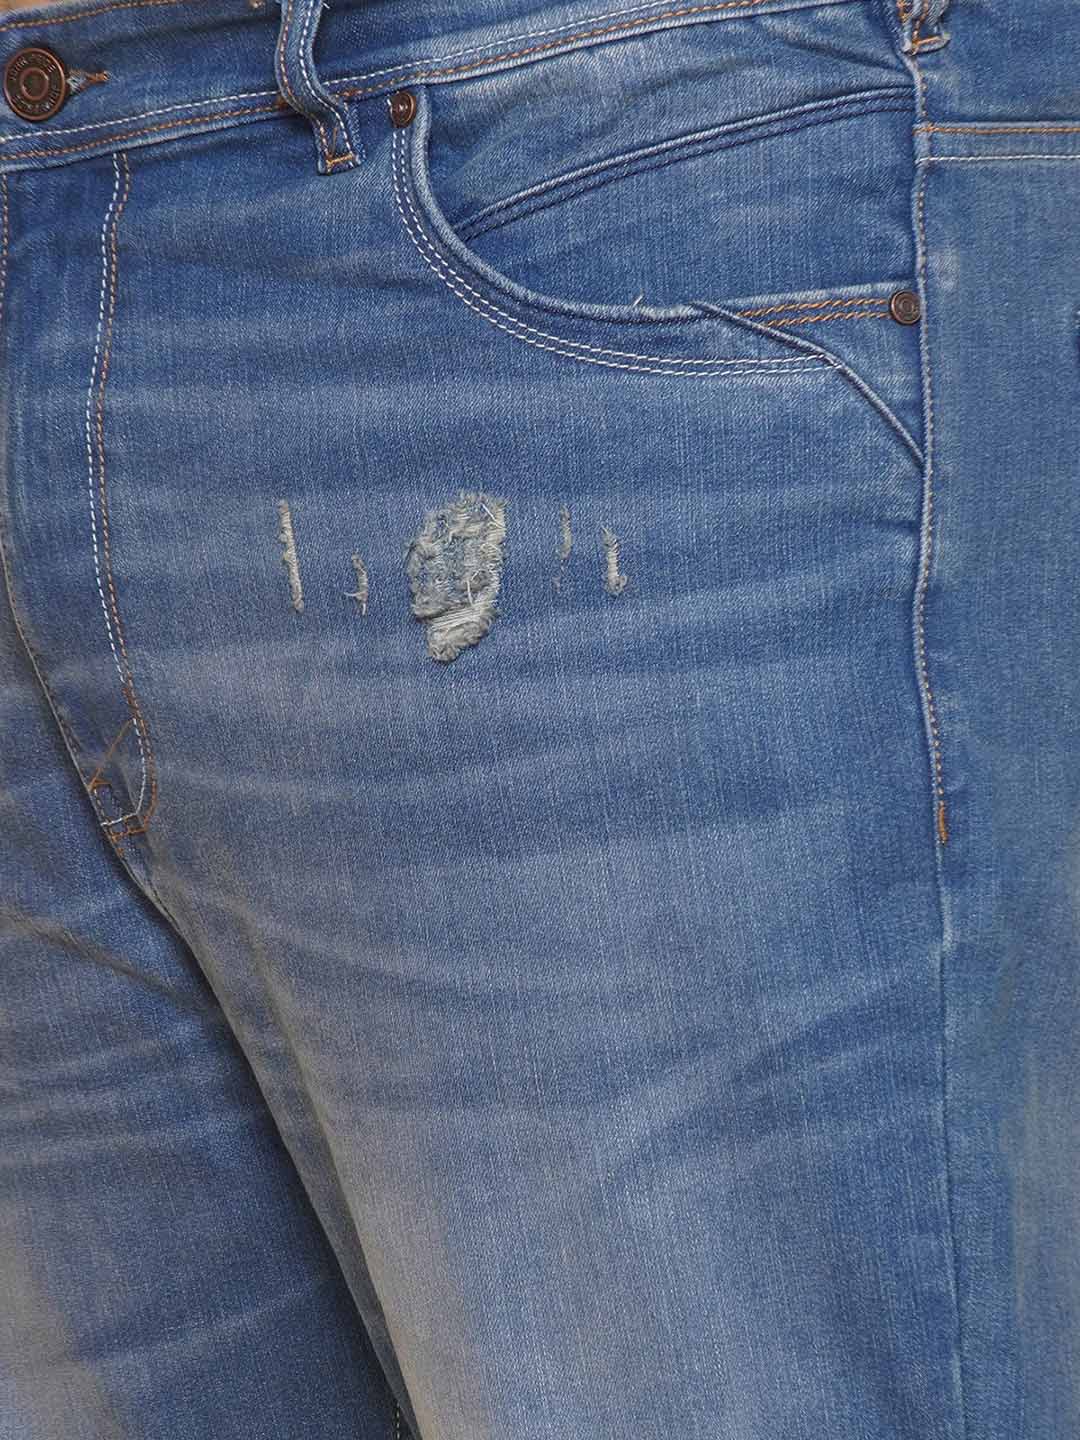 bottomwear/jeans/EJPJ25137/ejpj25137-2.jpg